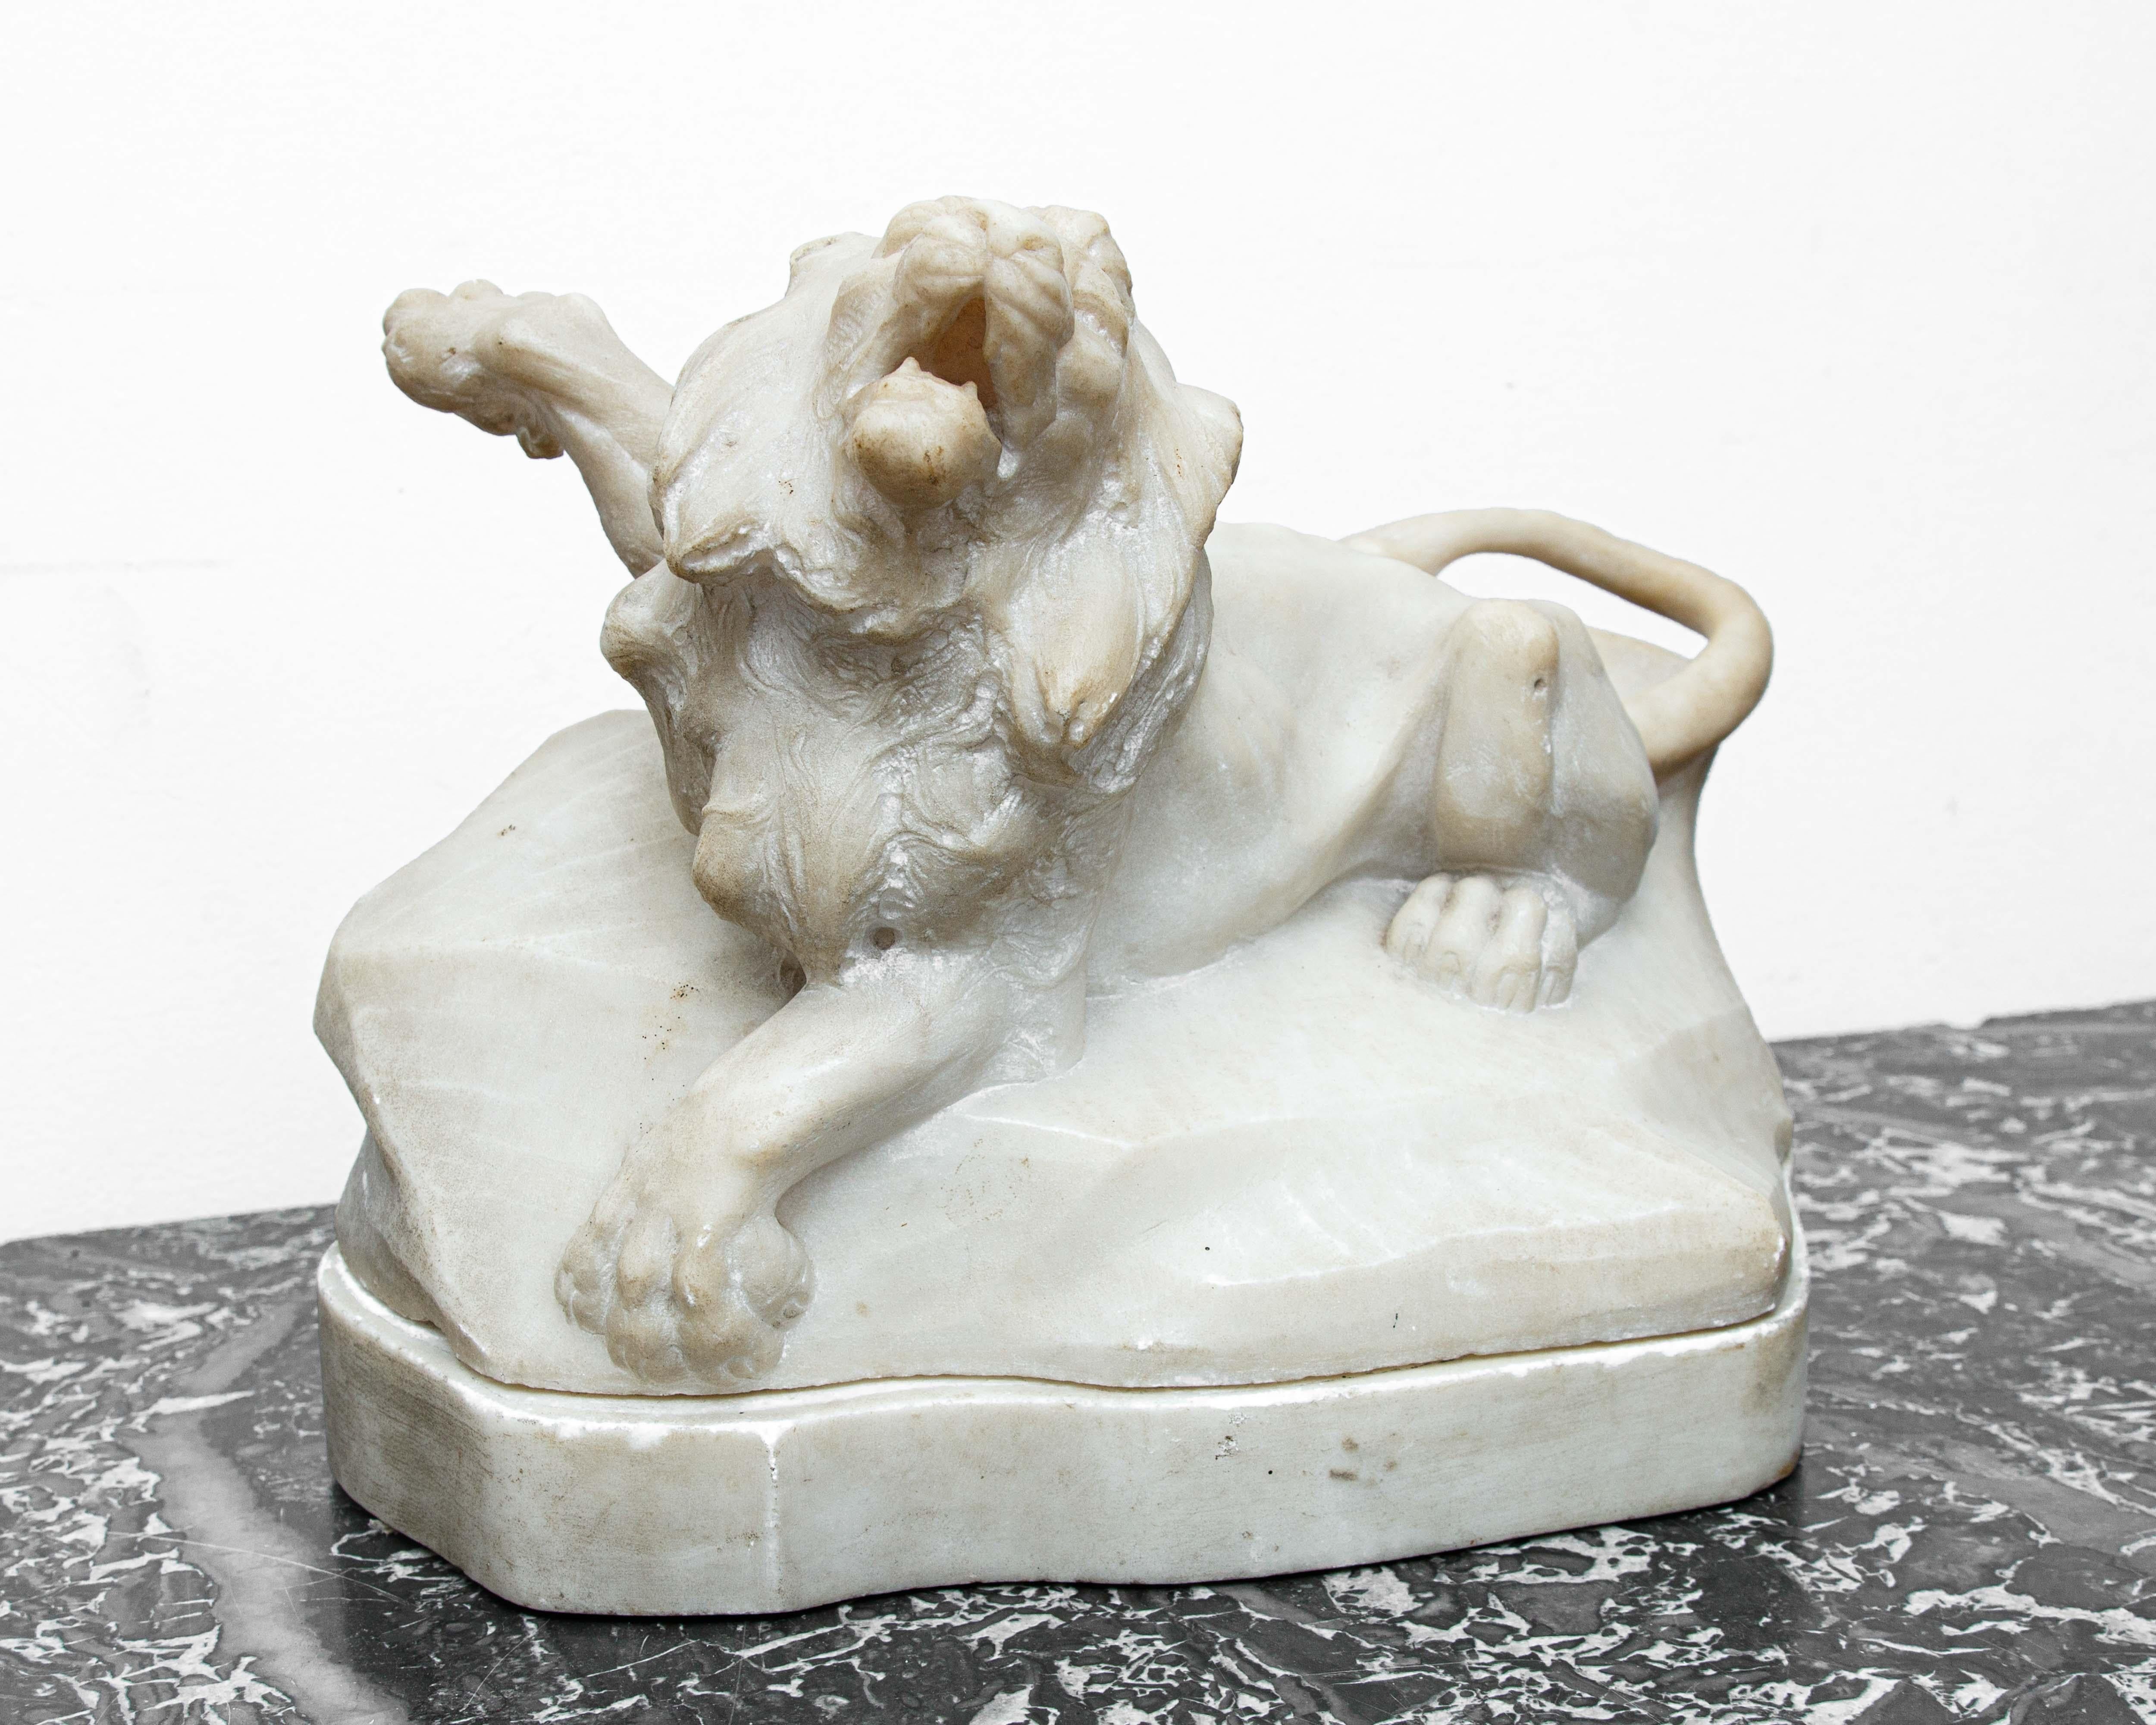 XVIIe siècle

Leone

Marbre, 30 x 43 x 25

L'objet examiné est une sculpture en marbre datant du XVIIe siècle, caractérisée par un langage fort et viscéral, à la recherche de l'effet et de l'attention de l'observateur : une poétique faite pour